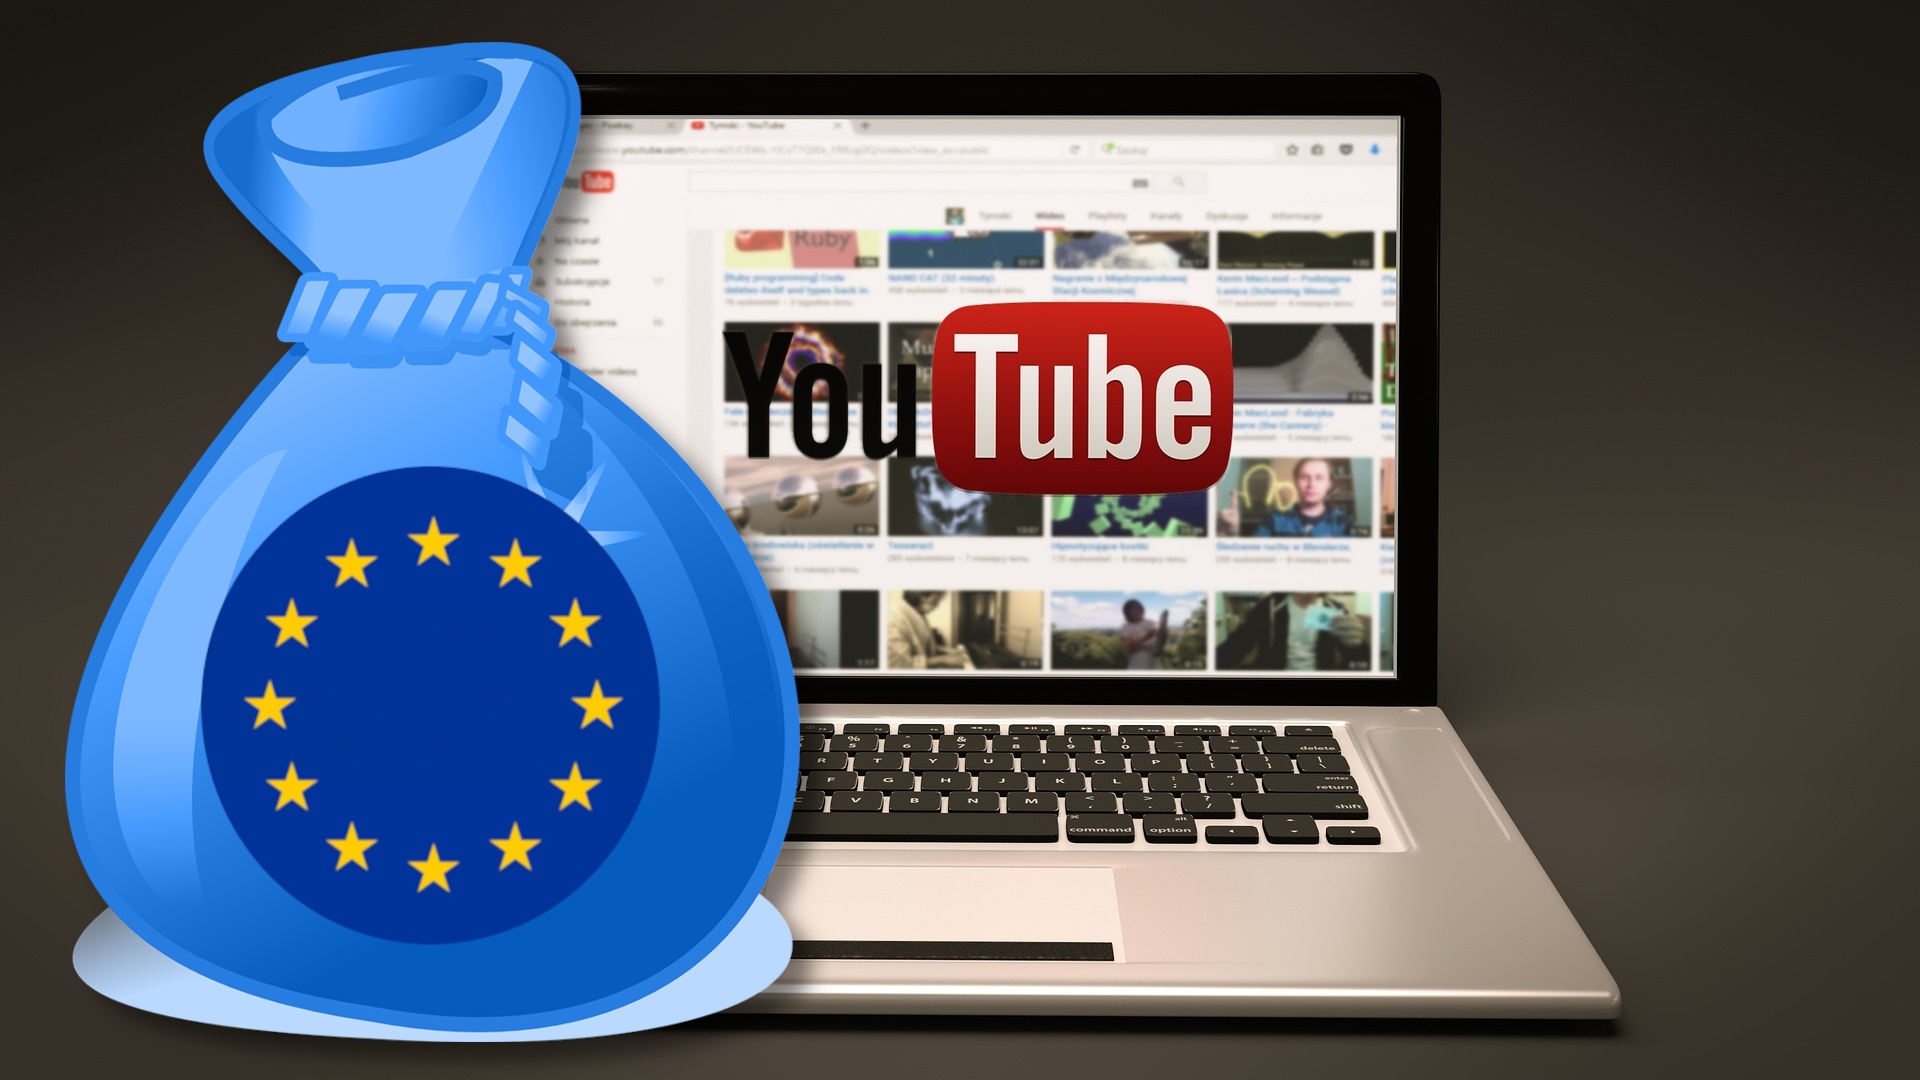 #Verbraucherschützer alarmiert: EU erwägt Internet-Steuer für Netflix, YouTube & Co. in Milliardenhöhe